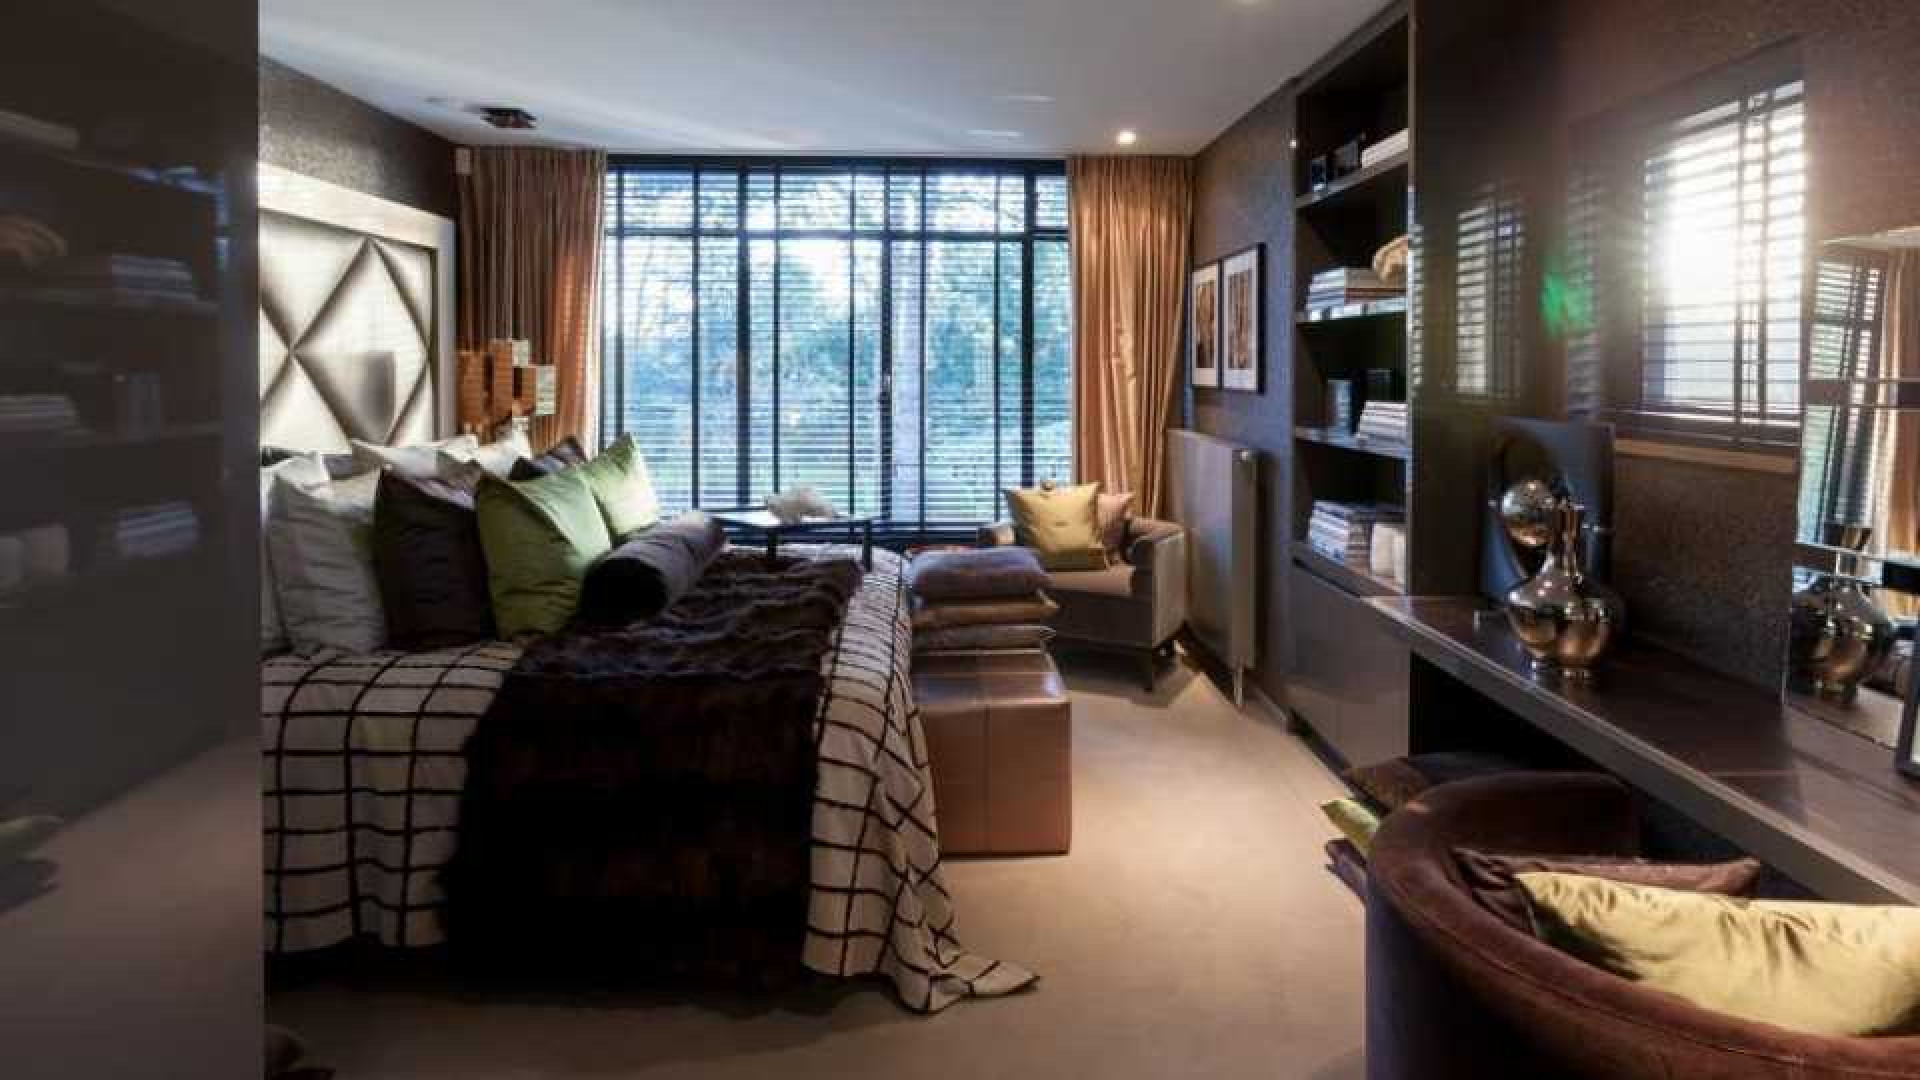 Top interieur stylist Eric Kuster zet zijn eigen droomvilla te koop. Zie foto's 30